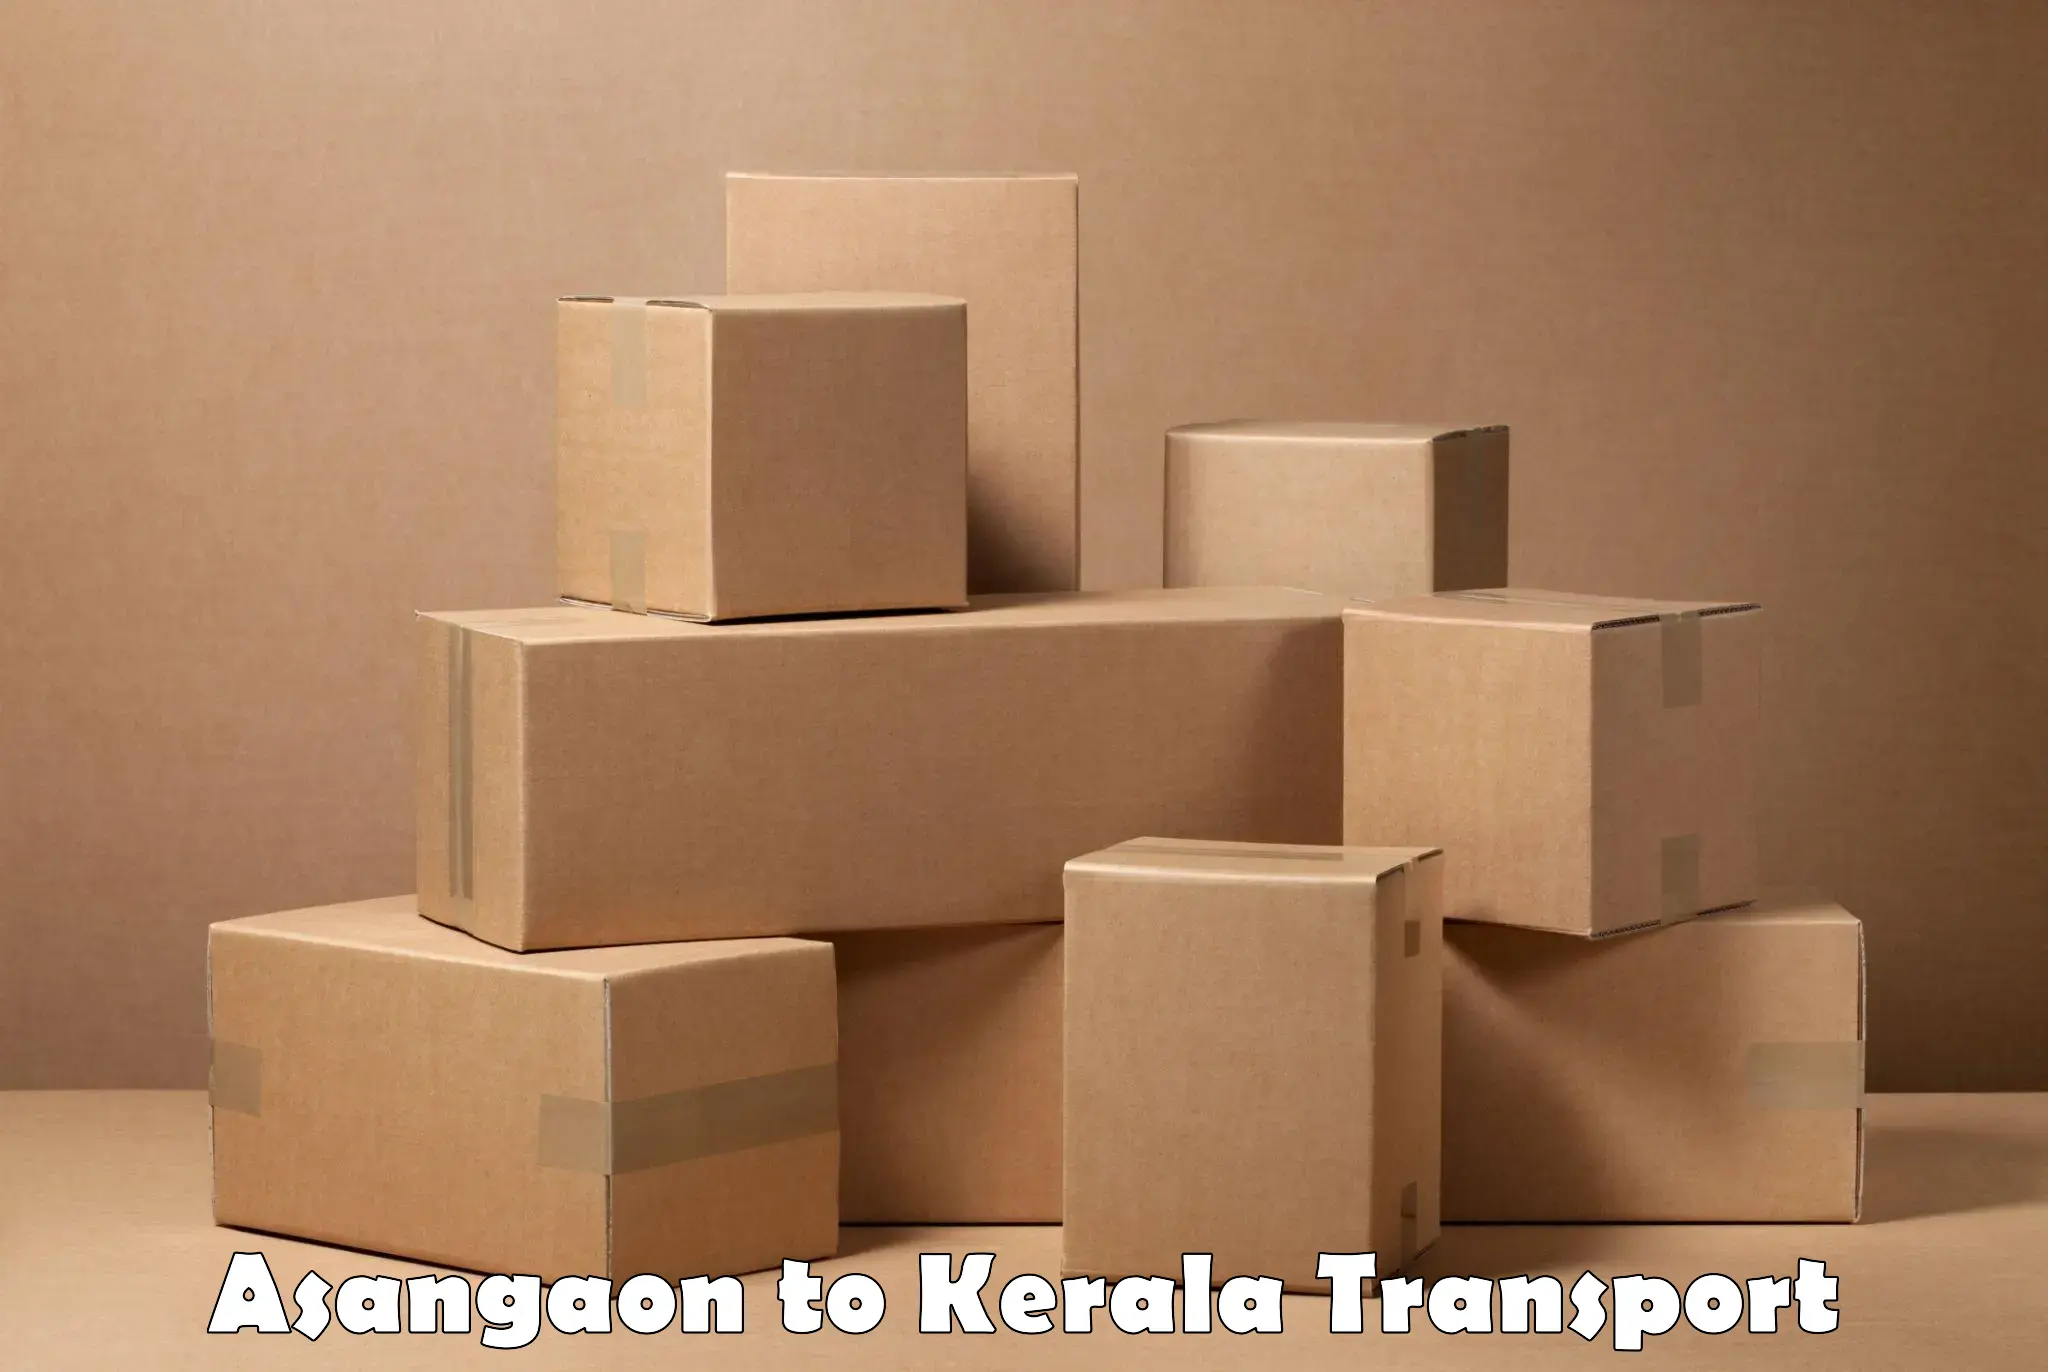 Lorry transport service Asangaon to Sreekandapuram